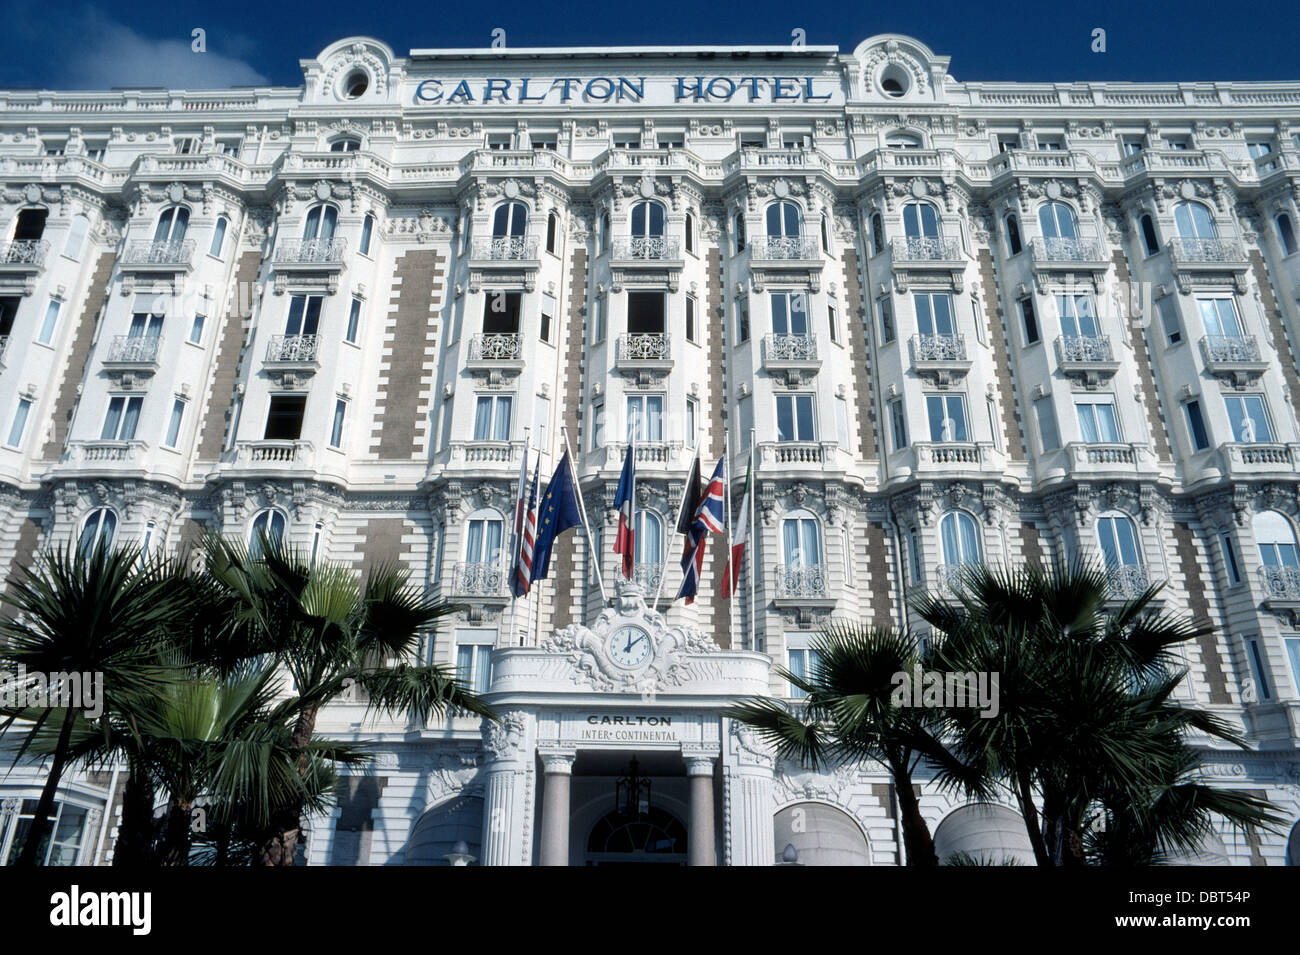 Die berühmten und eleganten Art-deco-InterContinental Carlton Hotel an der französischen Riviera in Cannes, Frankreich, feierte seinen 100. Geburtstag im Jahr 2013. Stockfoto